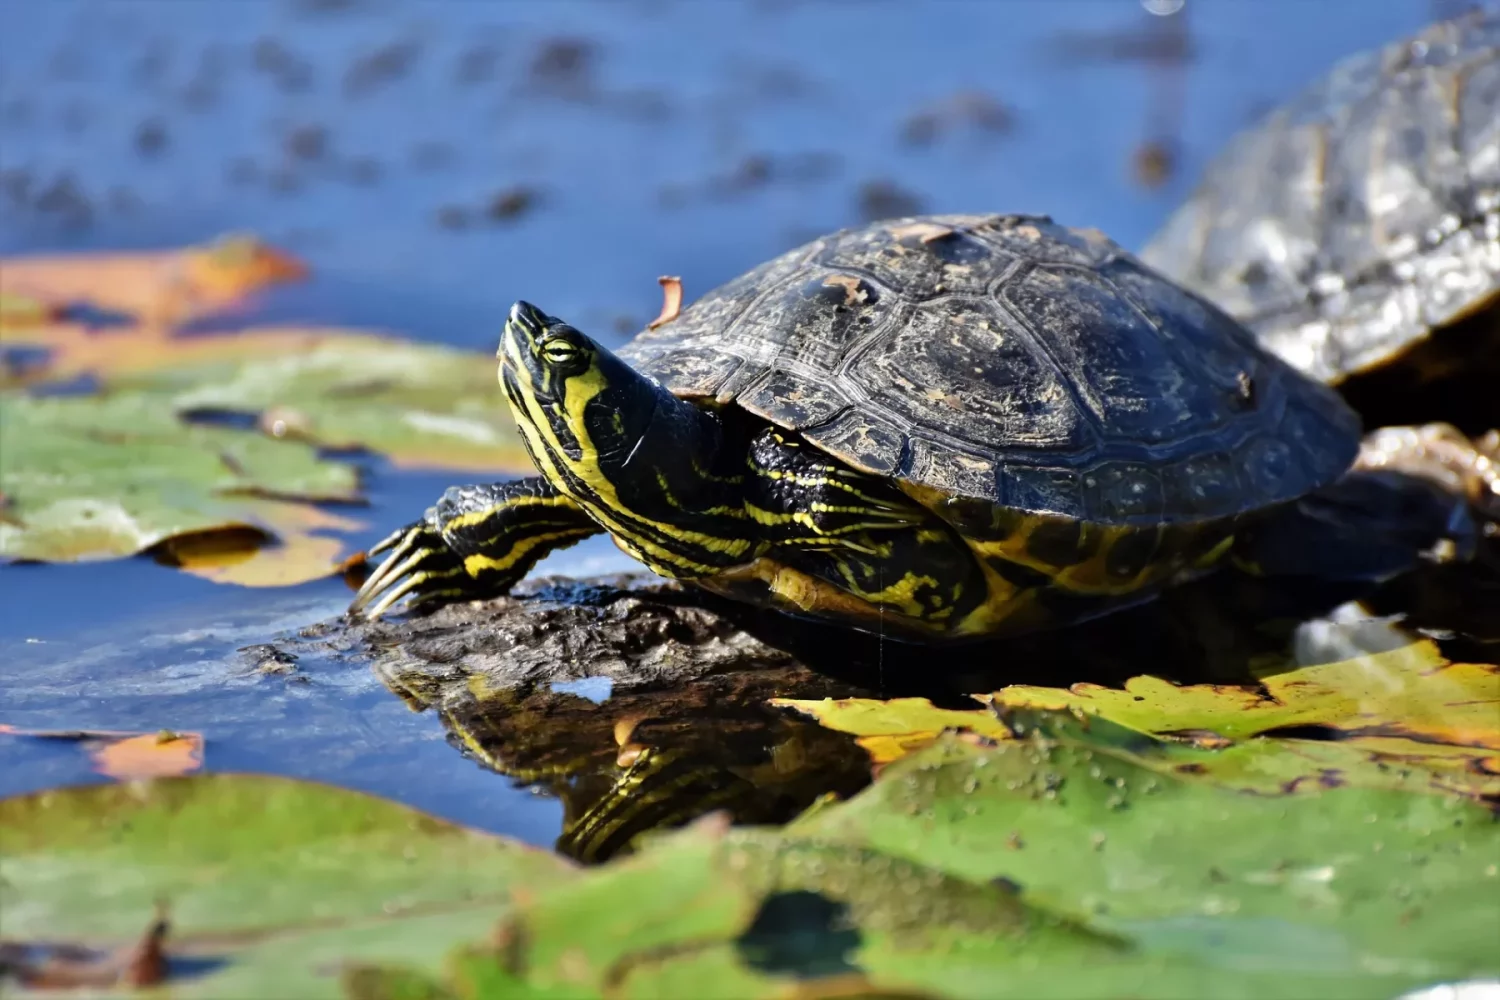 Nourriture tortue d'eau - Tout savoir sur leur alimentation